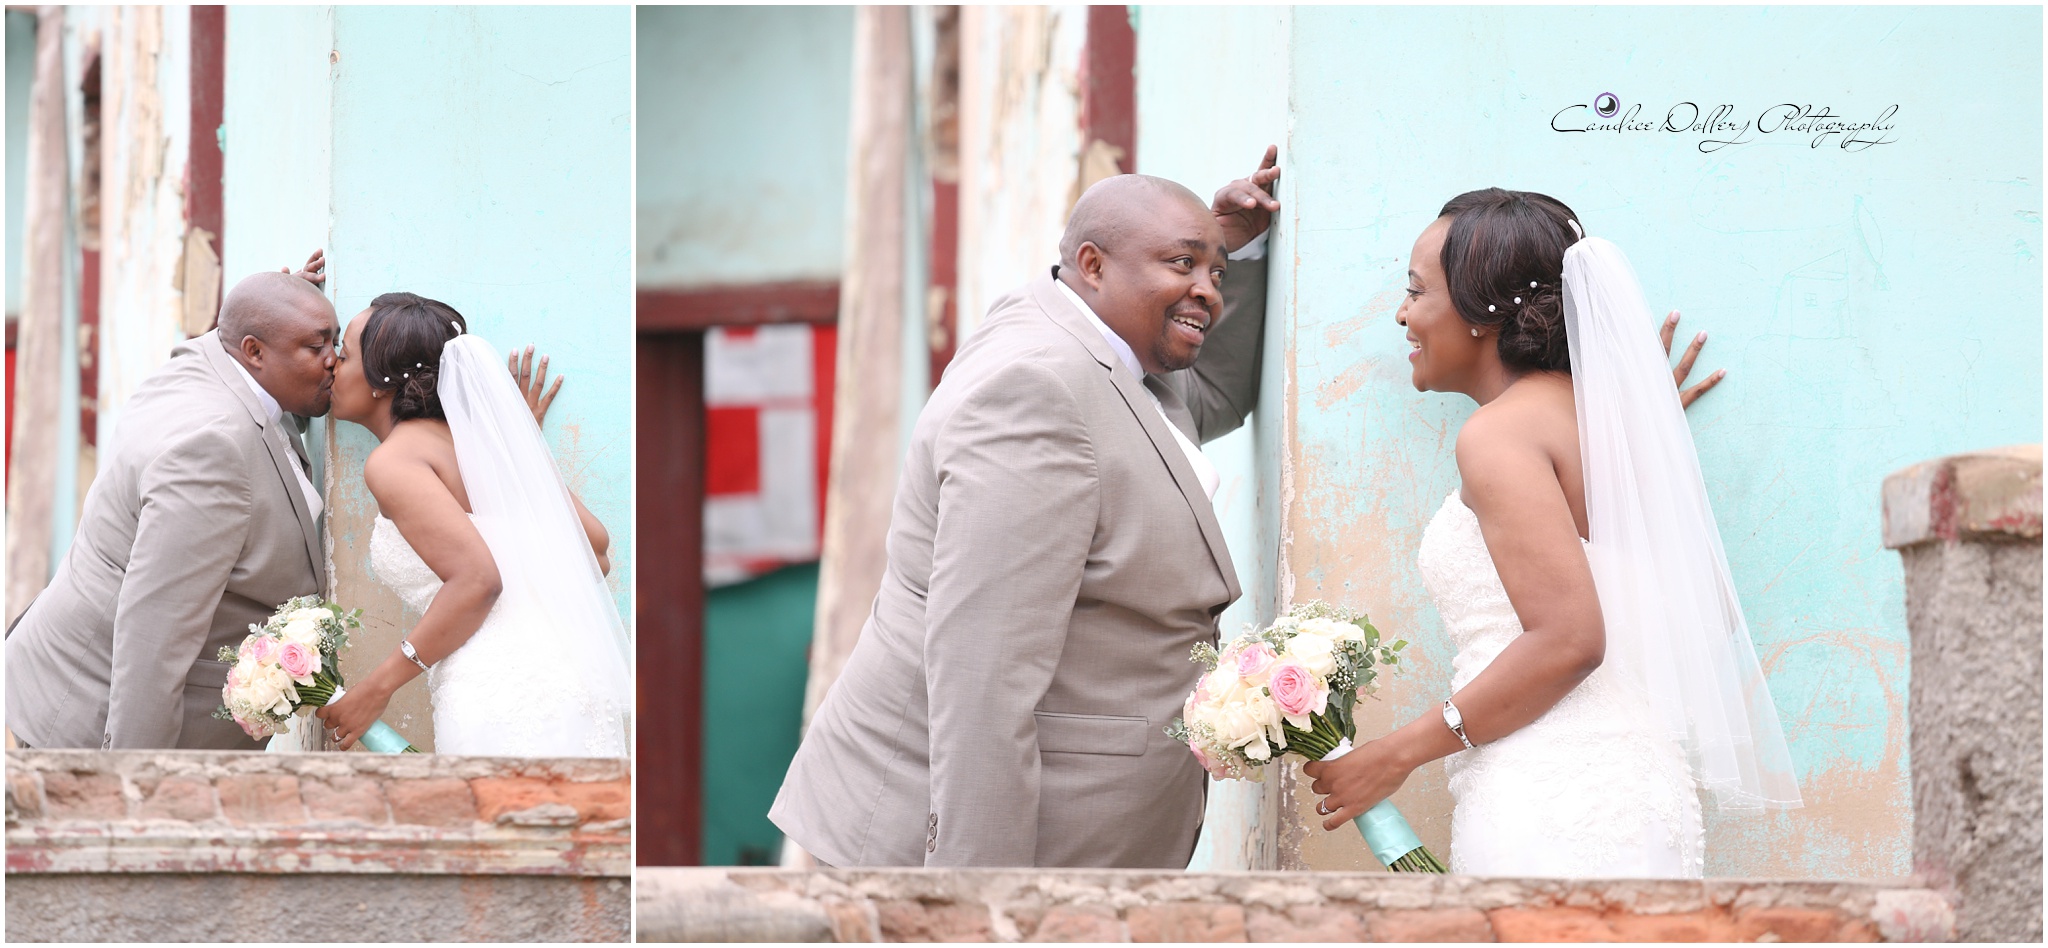 Masivuye & Khuselo's Wedding - Candice Dollery Photography_7282